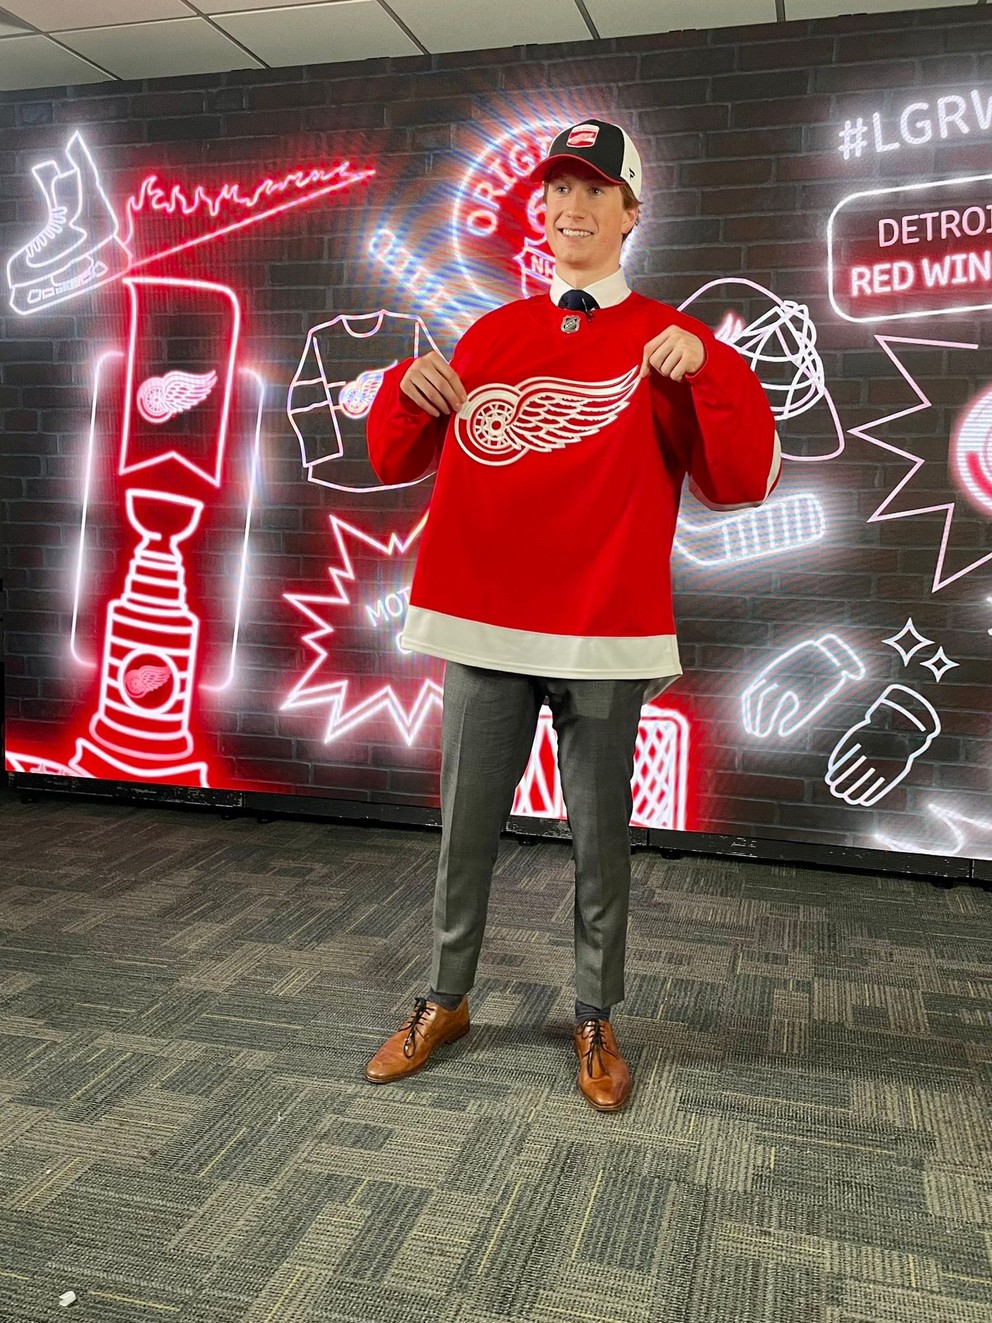 Švéd Axel Sandin Pellikka bol v drafte NHL 2023 draftovaný na 17. mieste tímom Detroit Red Wings.